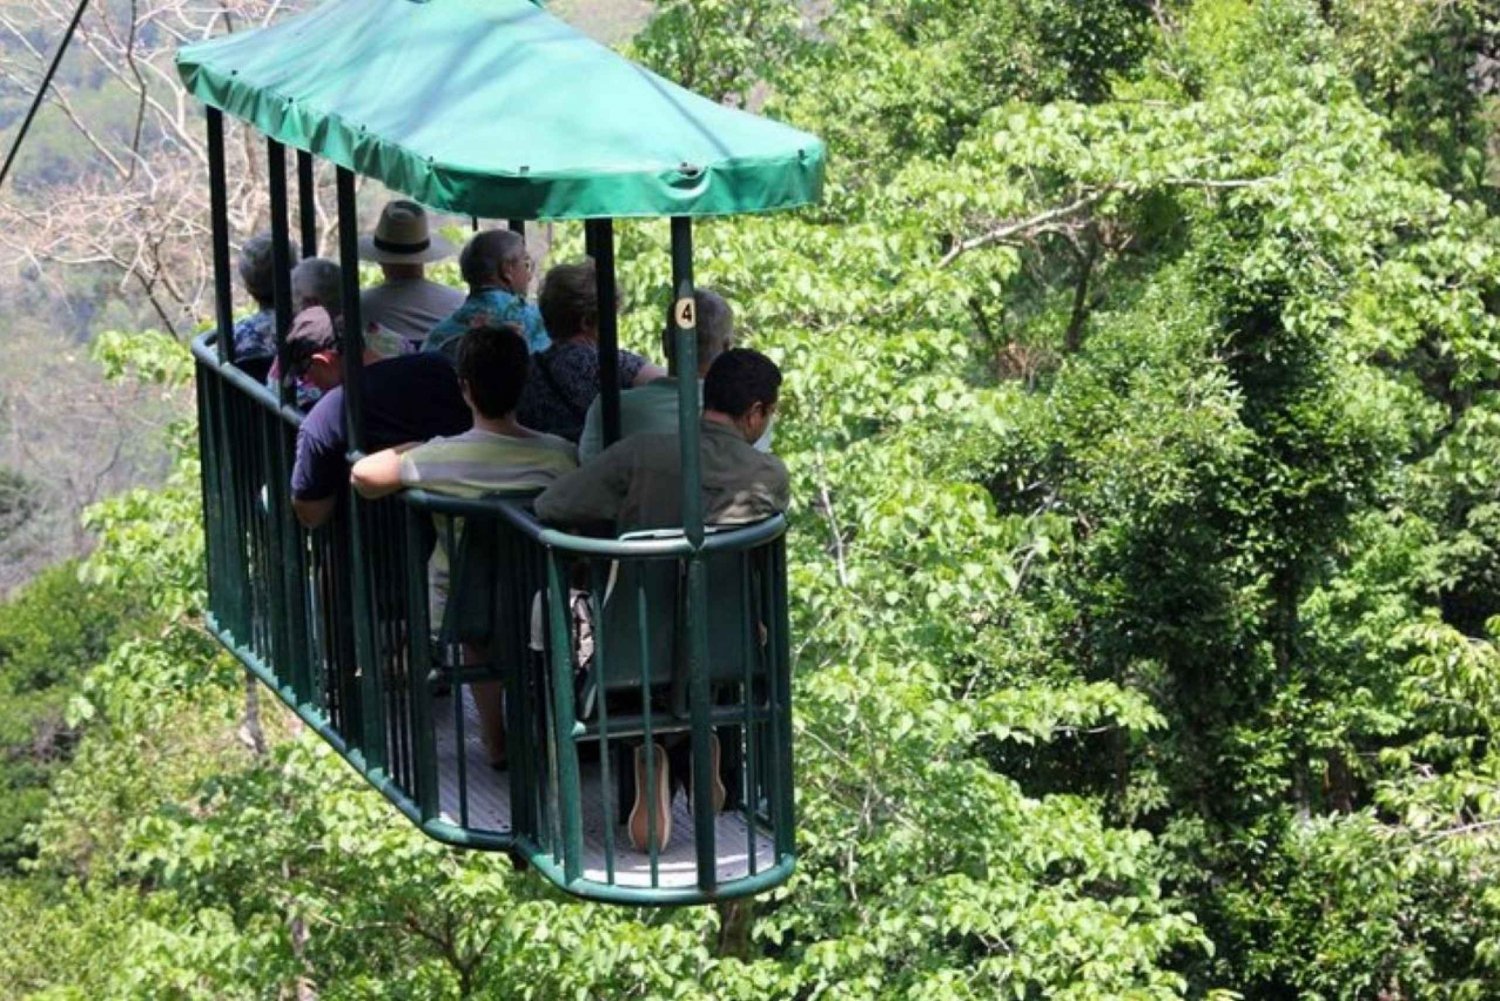 Fra Jaco: Aerial Tram Tour inkludert transport